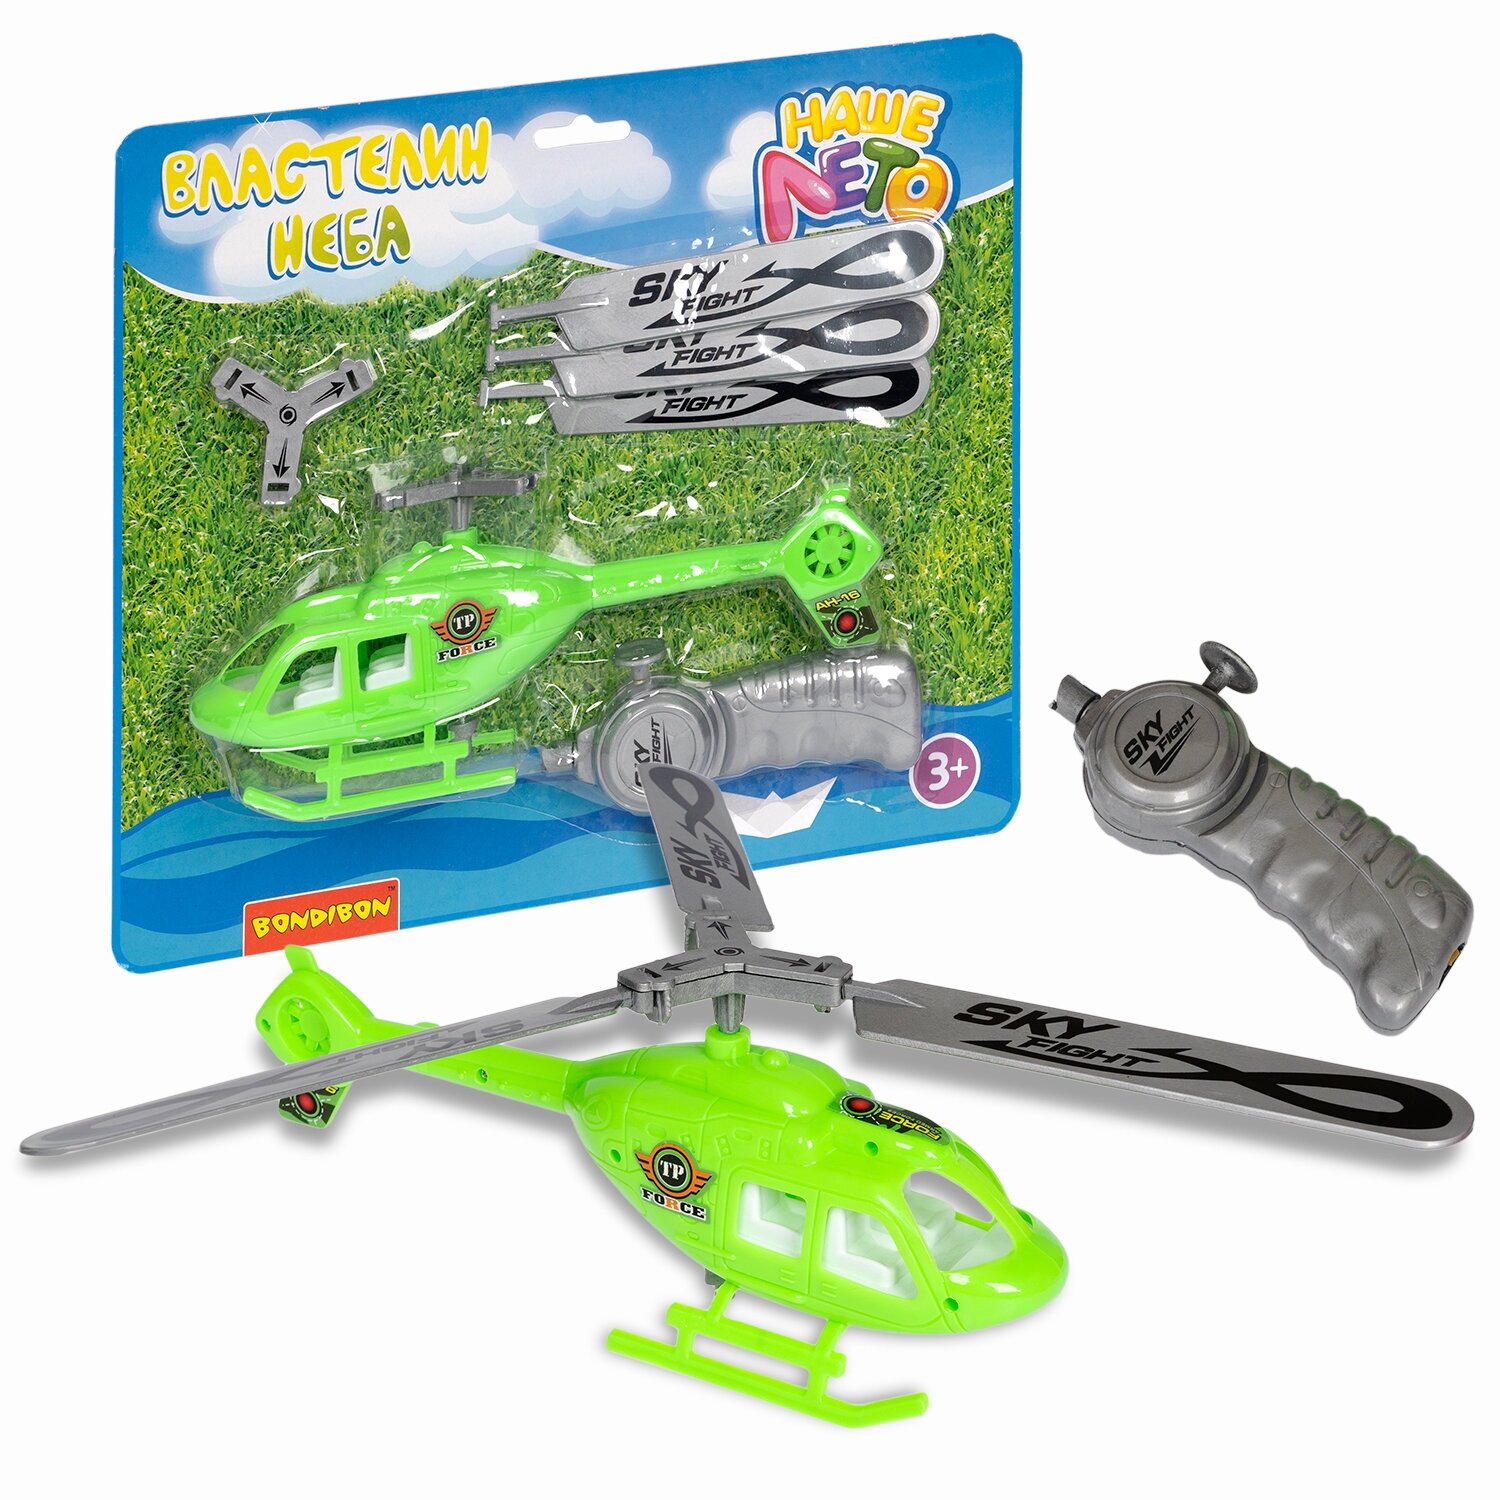 Вертолёт с запускающим устройством Bondibon "властелин неба", светло-зеленый с серебристыми лопастями Наше Лето, игрушка, подарок ребенку